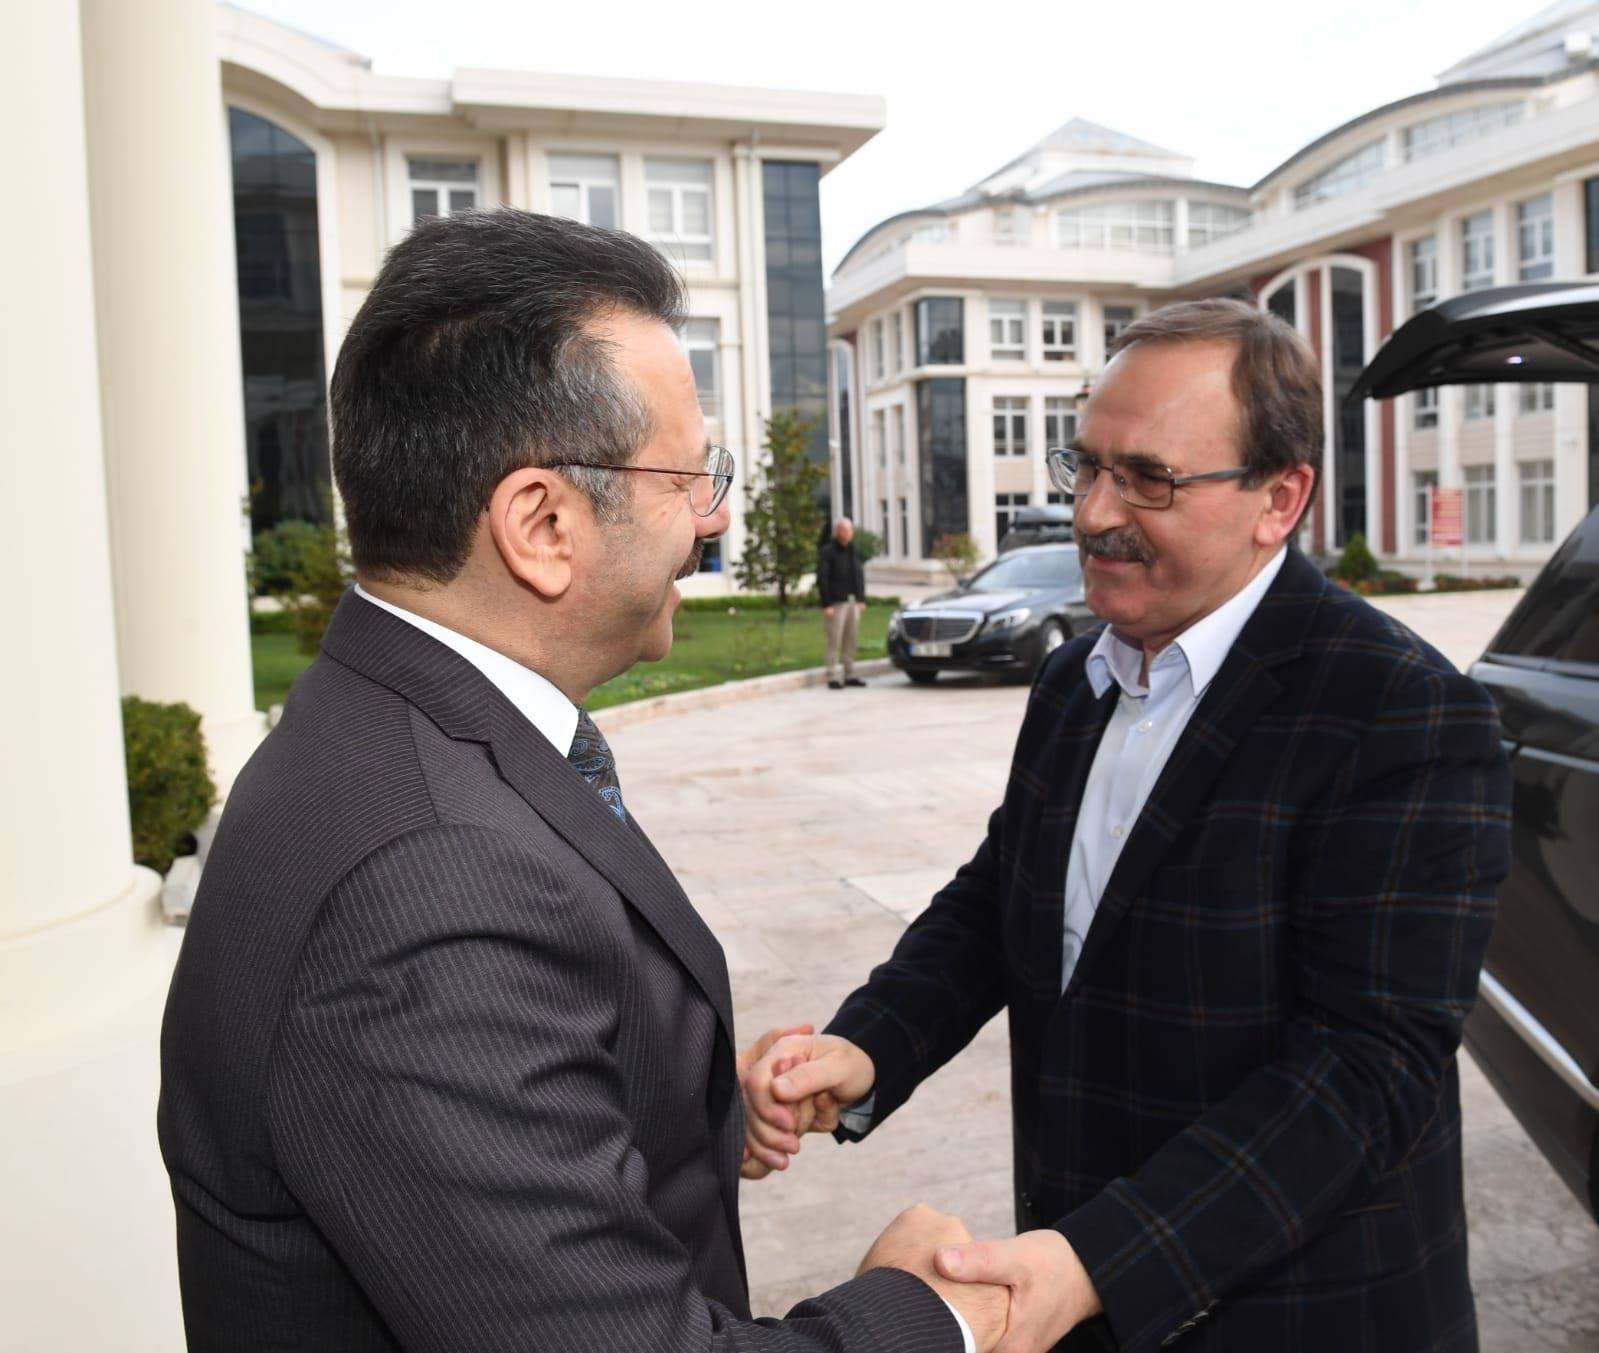 Başkan Şahin'den Vali Aksoy'a ziyaret